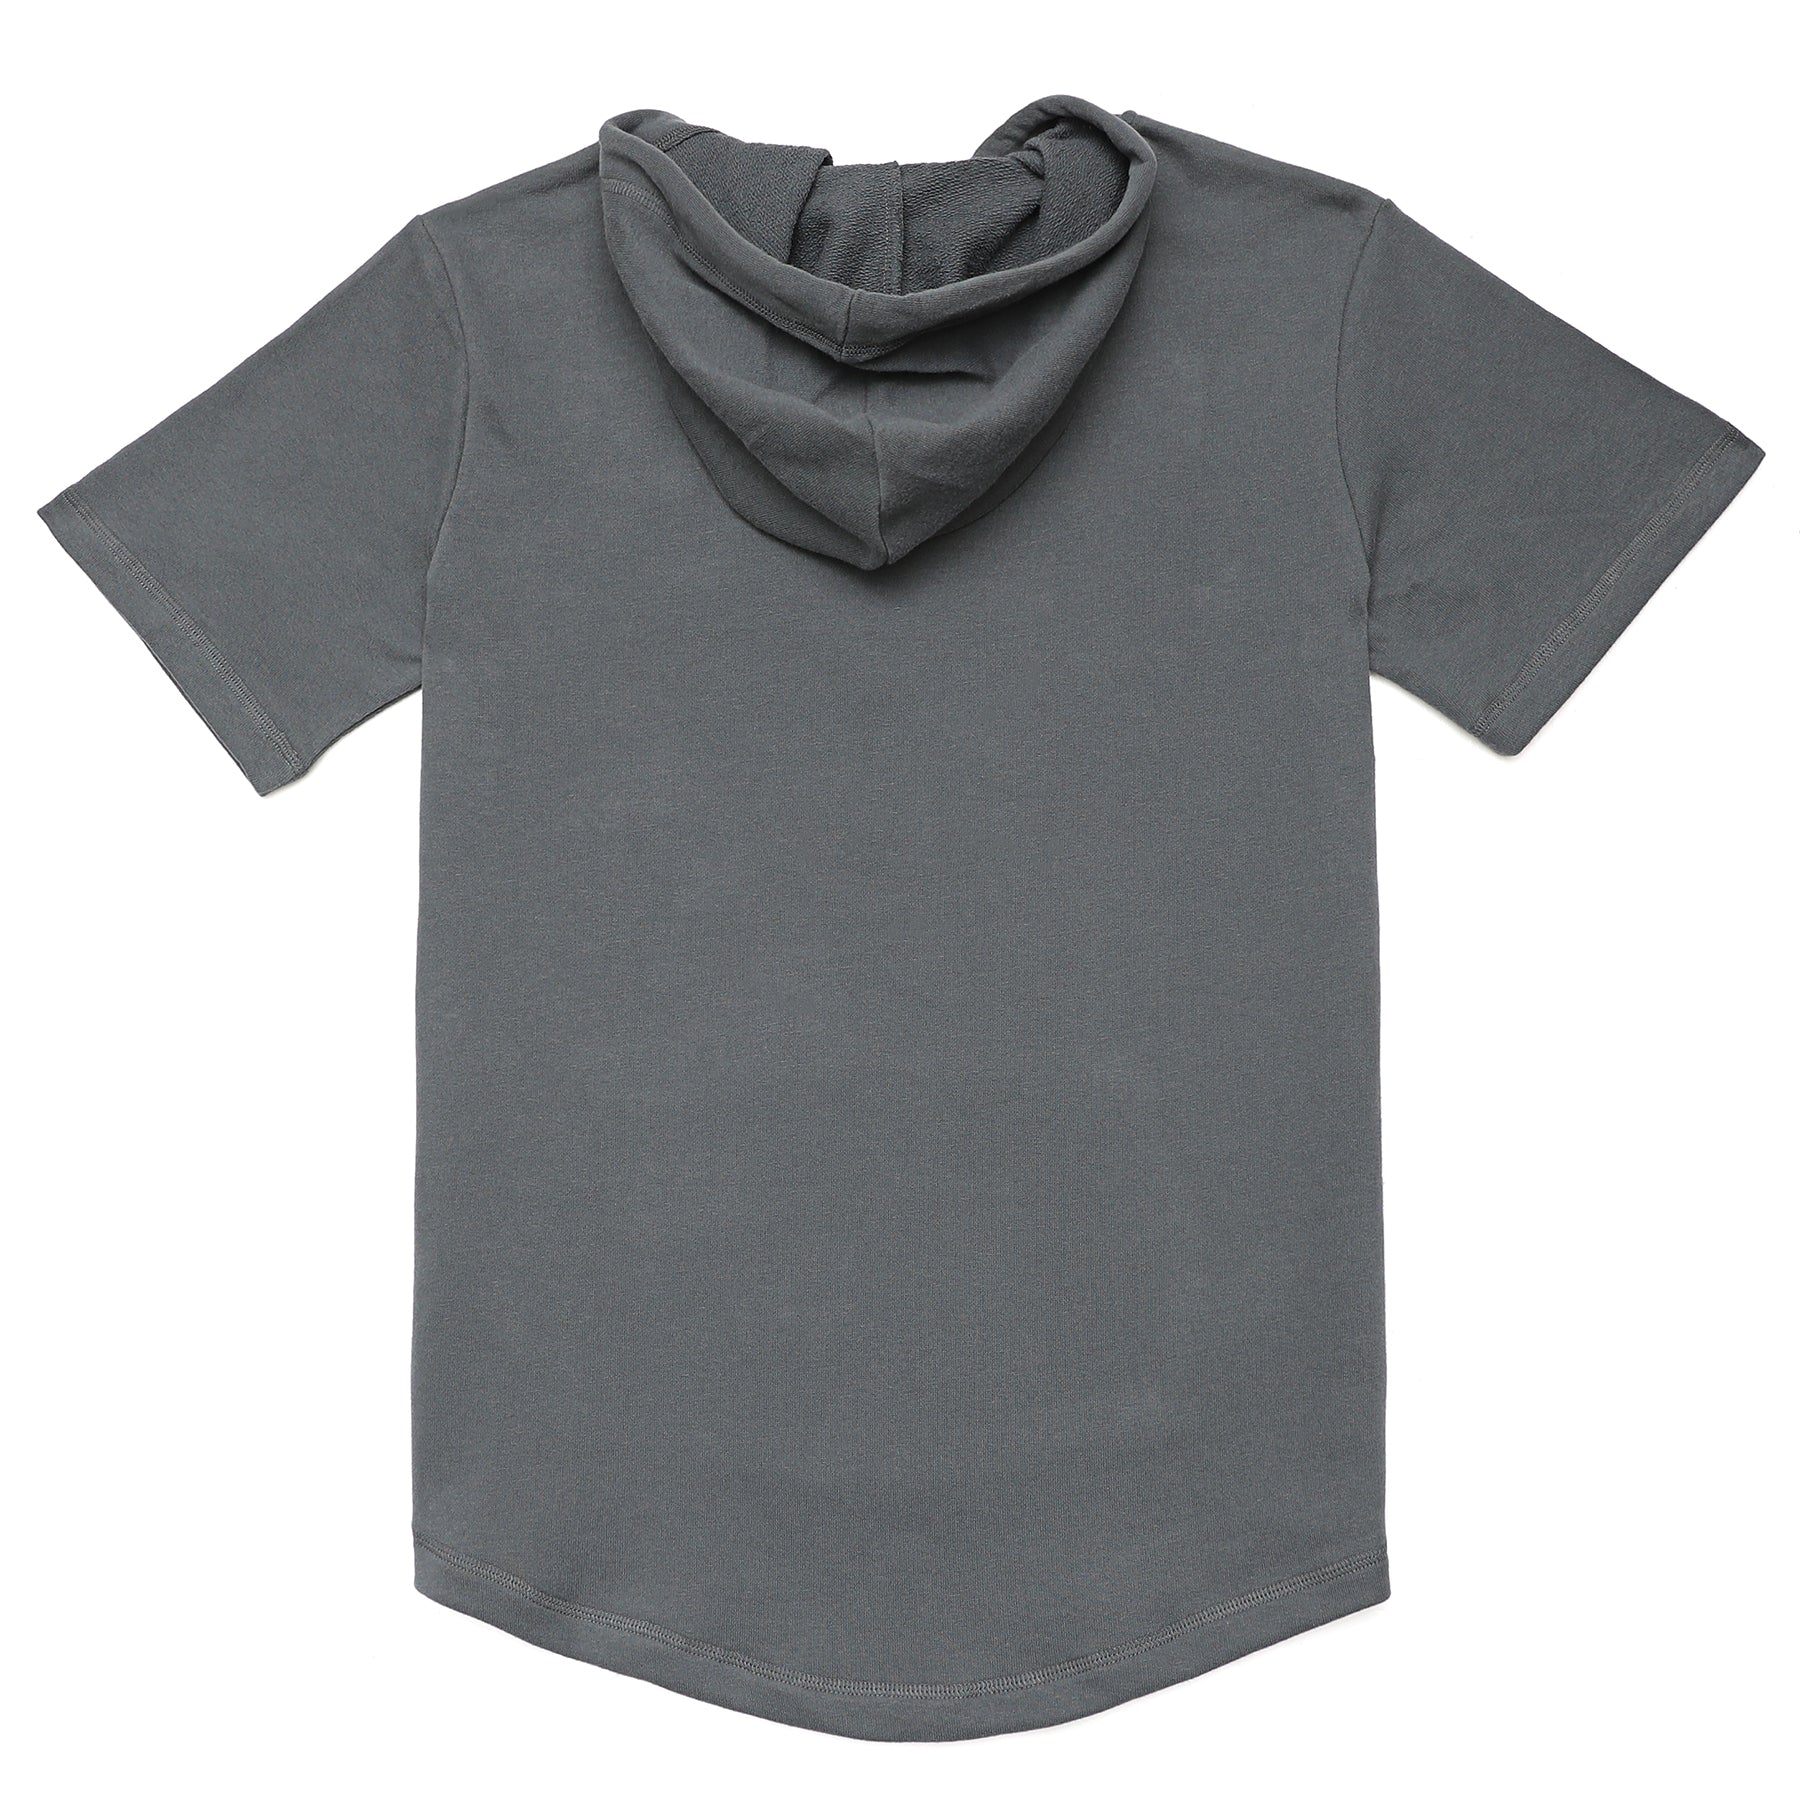 Men's Hoodies short-sleeved hooded sweatshirt #0614